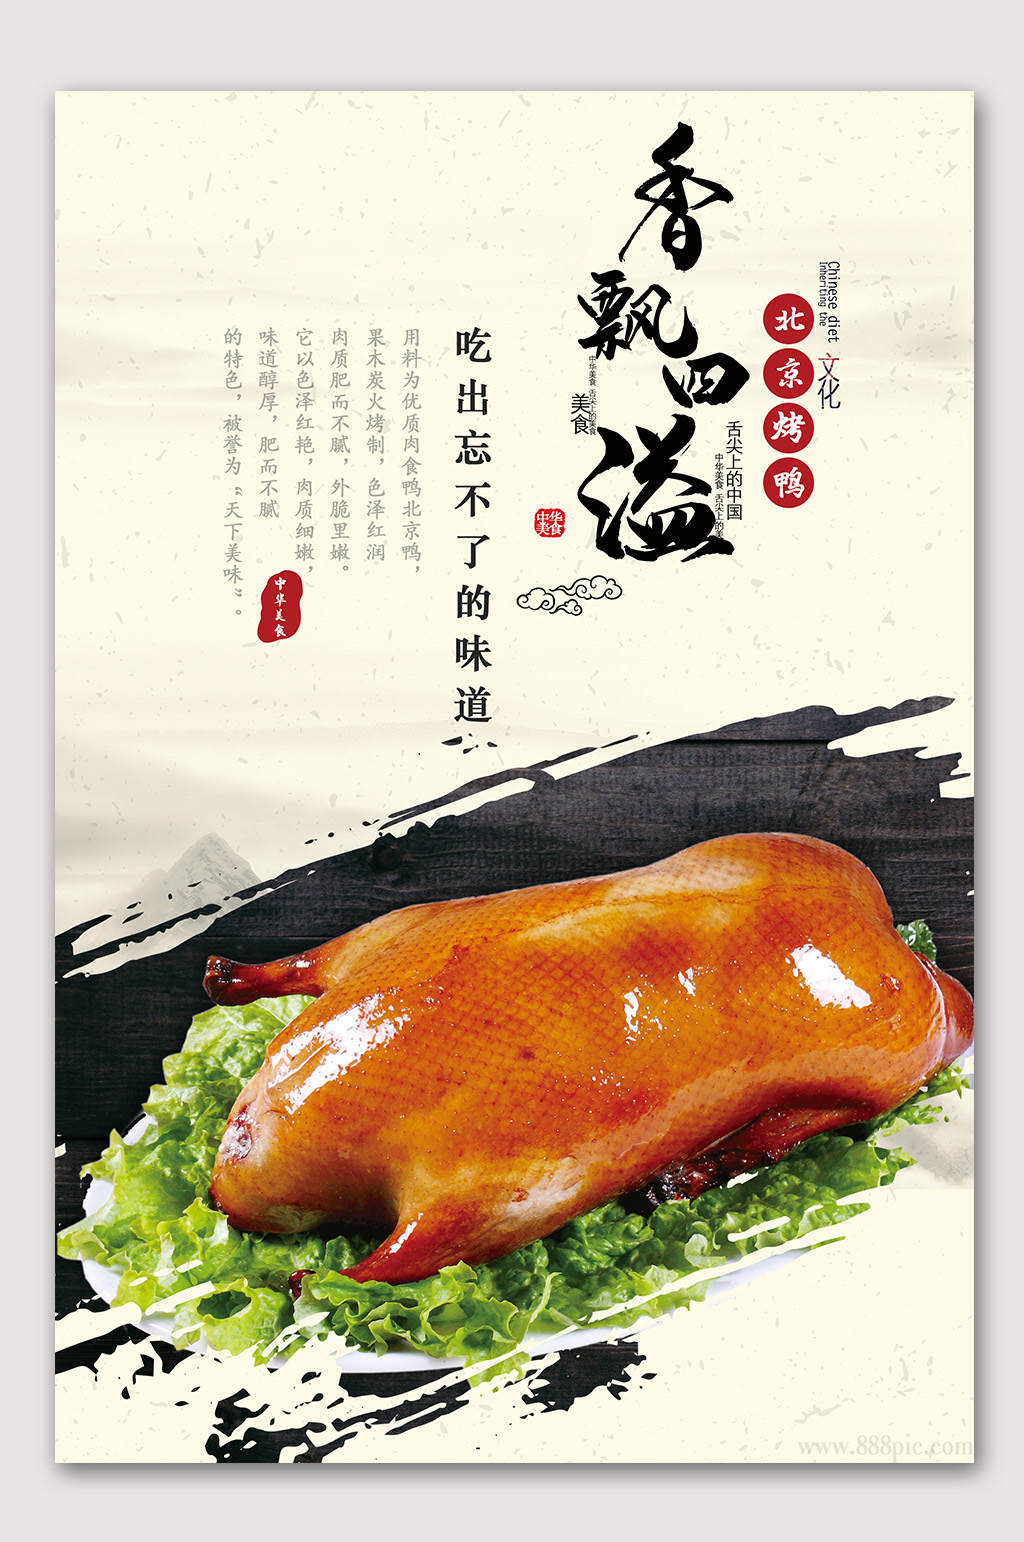 美味烤鸭素材免费下载,本作品是由山寨宝宝上传的原创平面广告素材